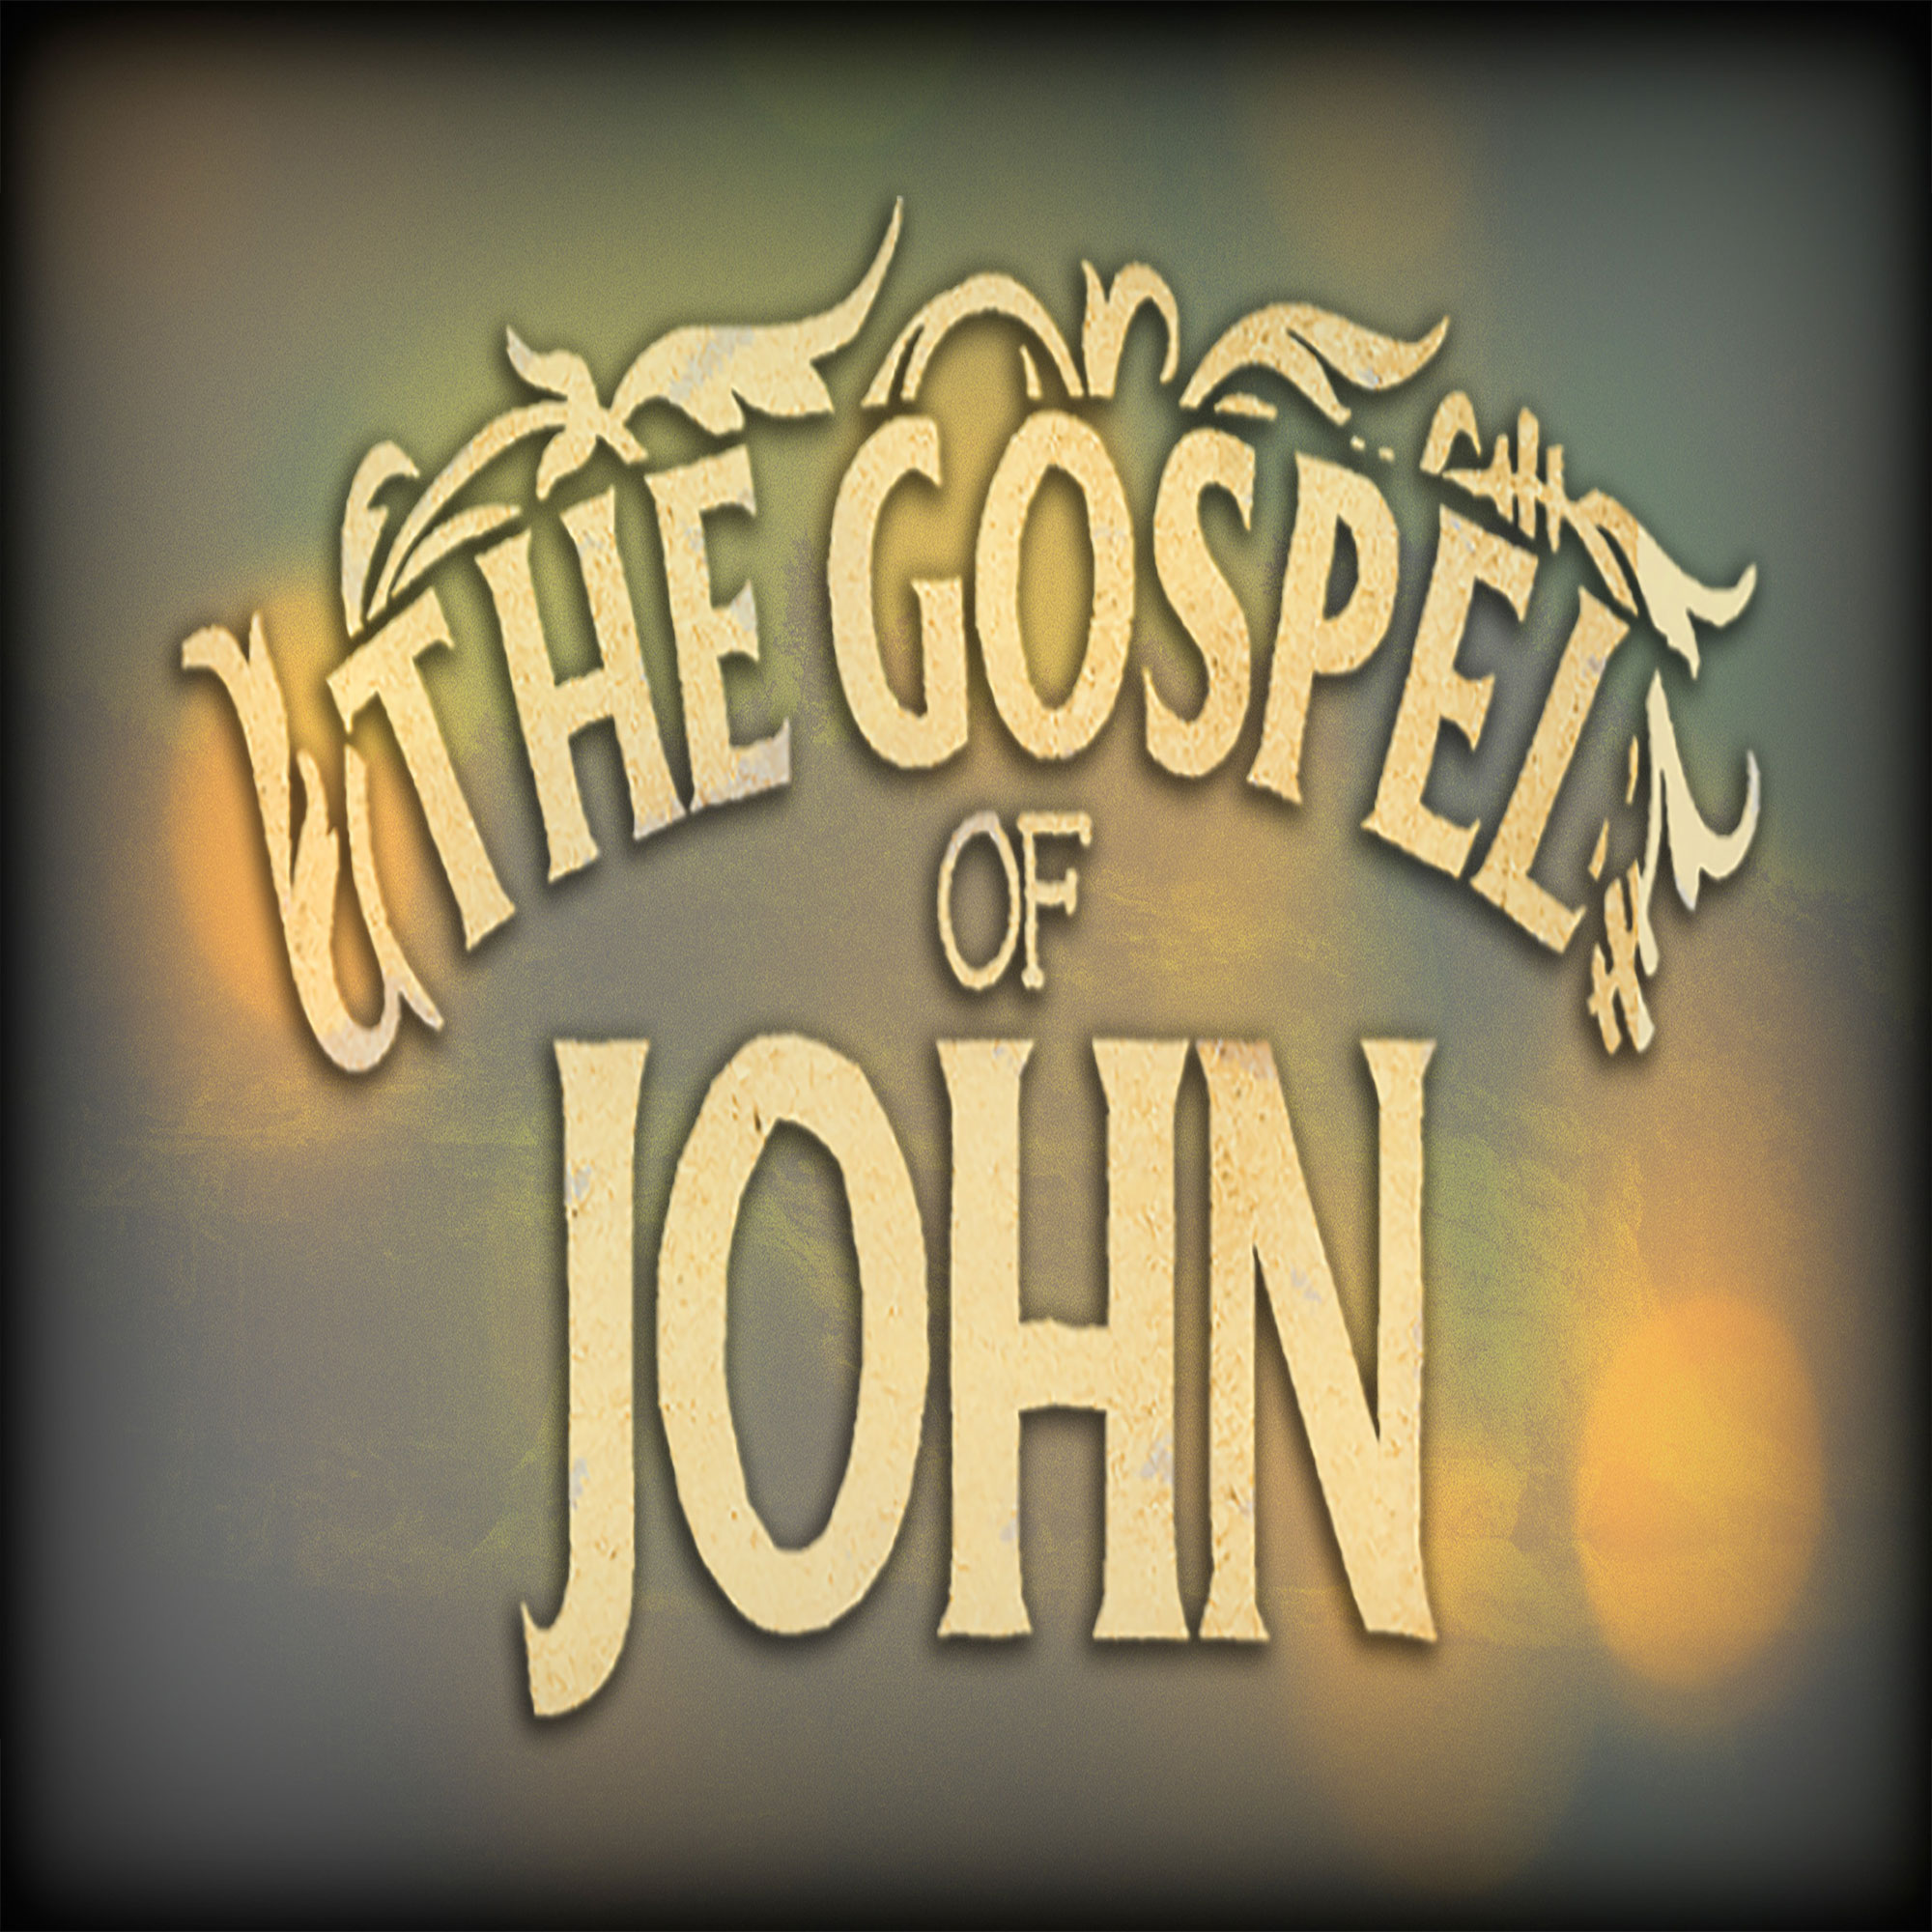 Gospel of John - Relationship > Religion